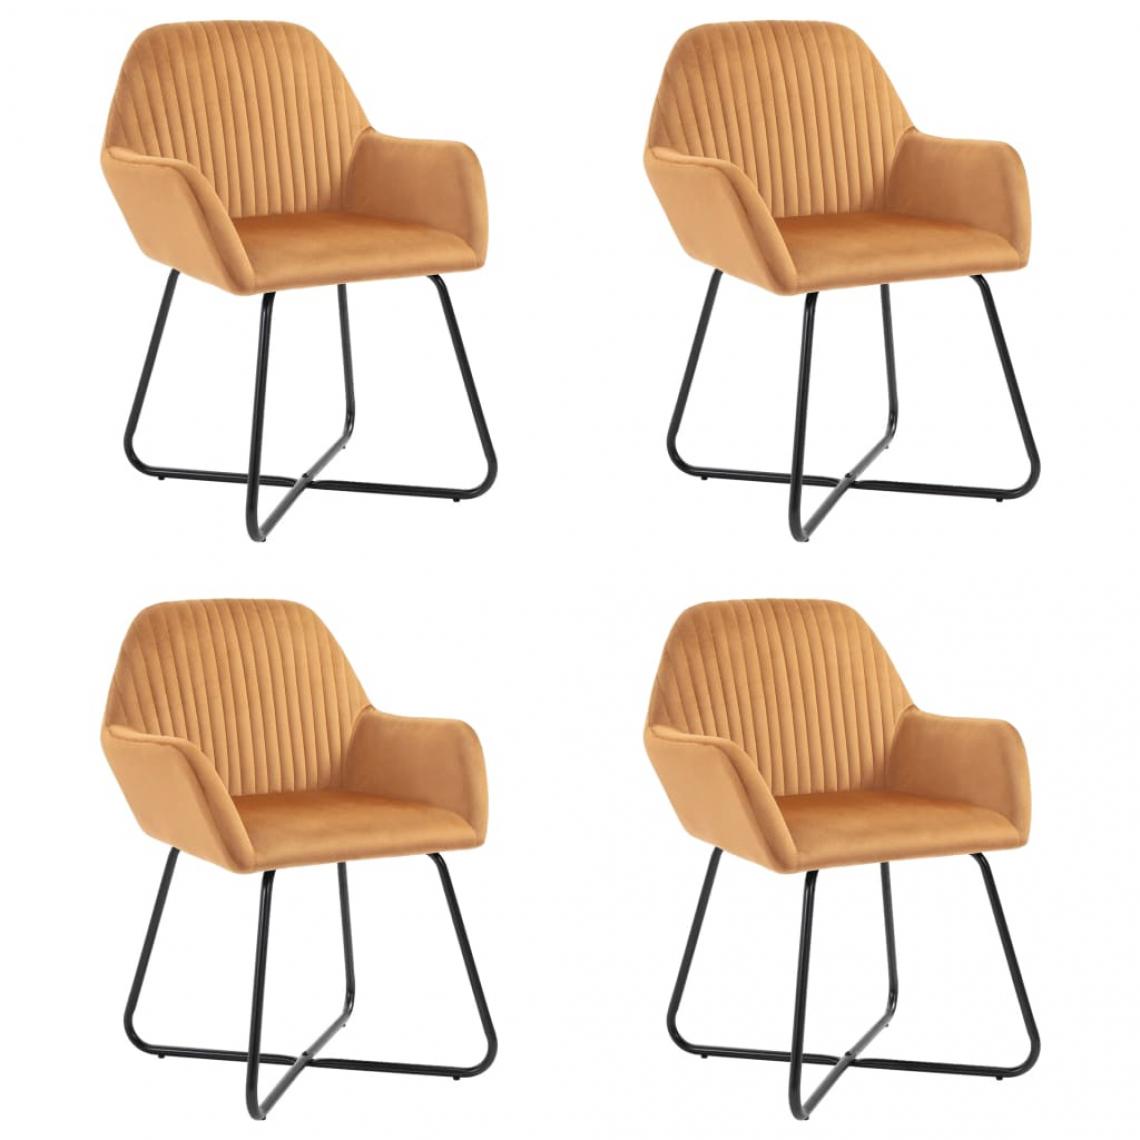 Decoshop26 - Lot de 4 chaises de salle à manger cuisine design moderne et chic en velours couleur ocre CDS021870 - Chaises